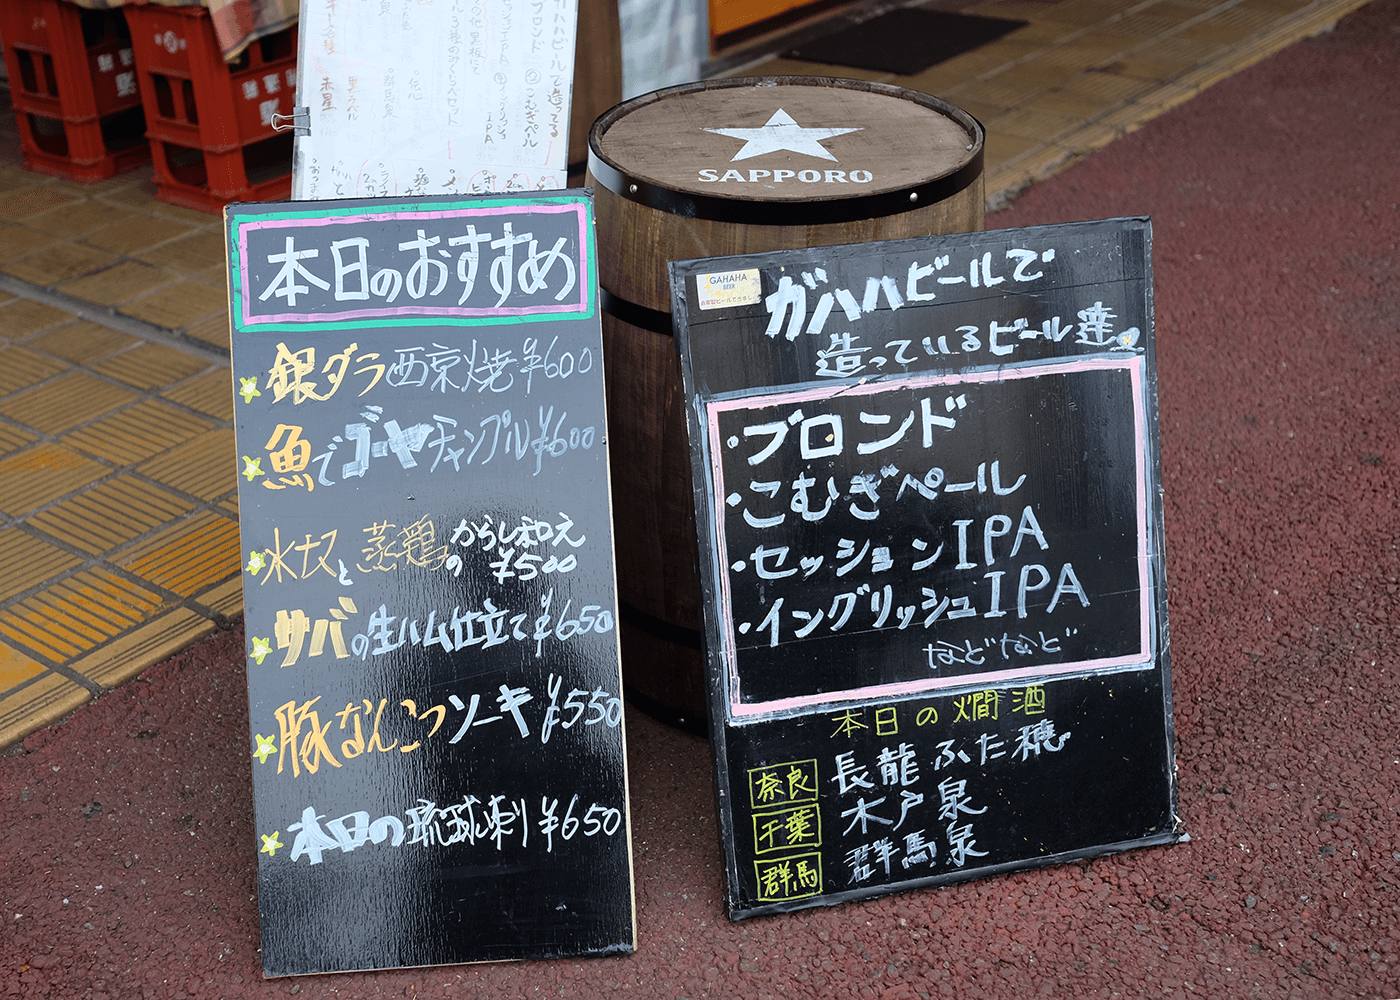 ガハハビール（gahahabeer）おおらかな笑い声と常連さんの楽しそうな声が響く、団地のクラフトビール屋さん@東京, 東陽町, 新木場